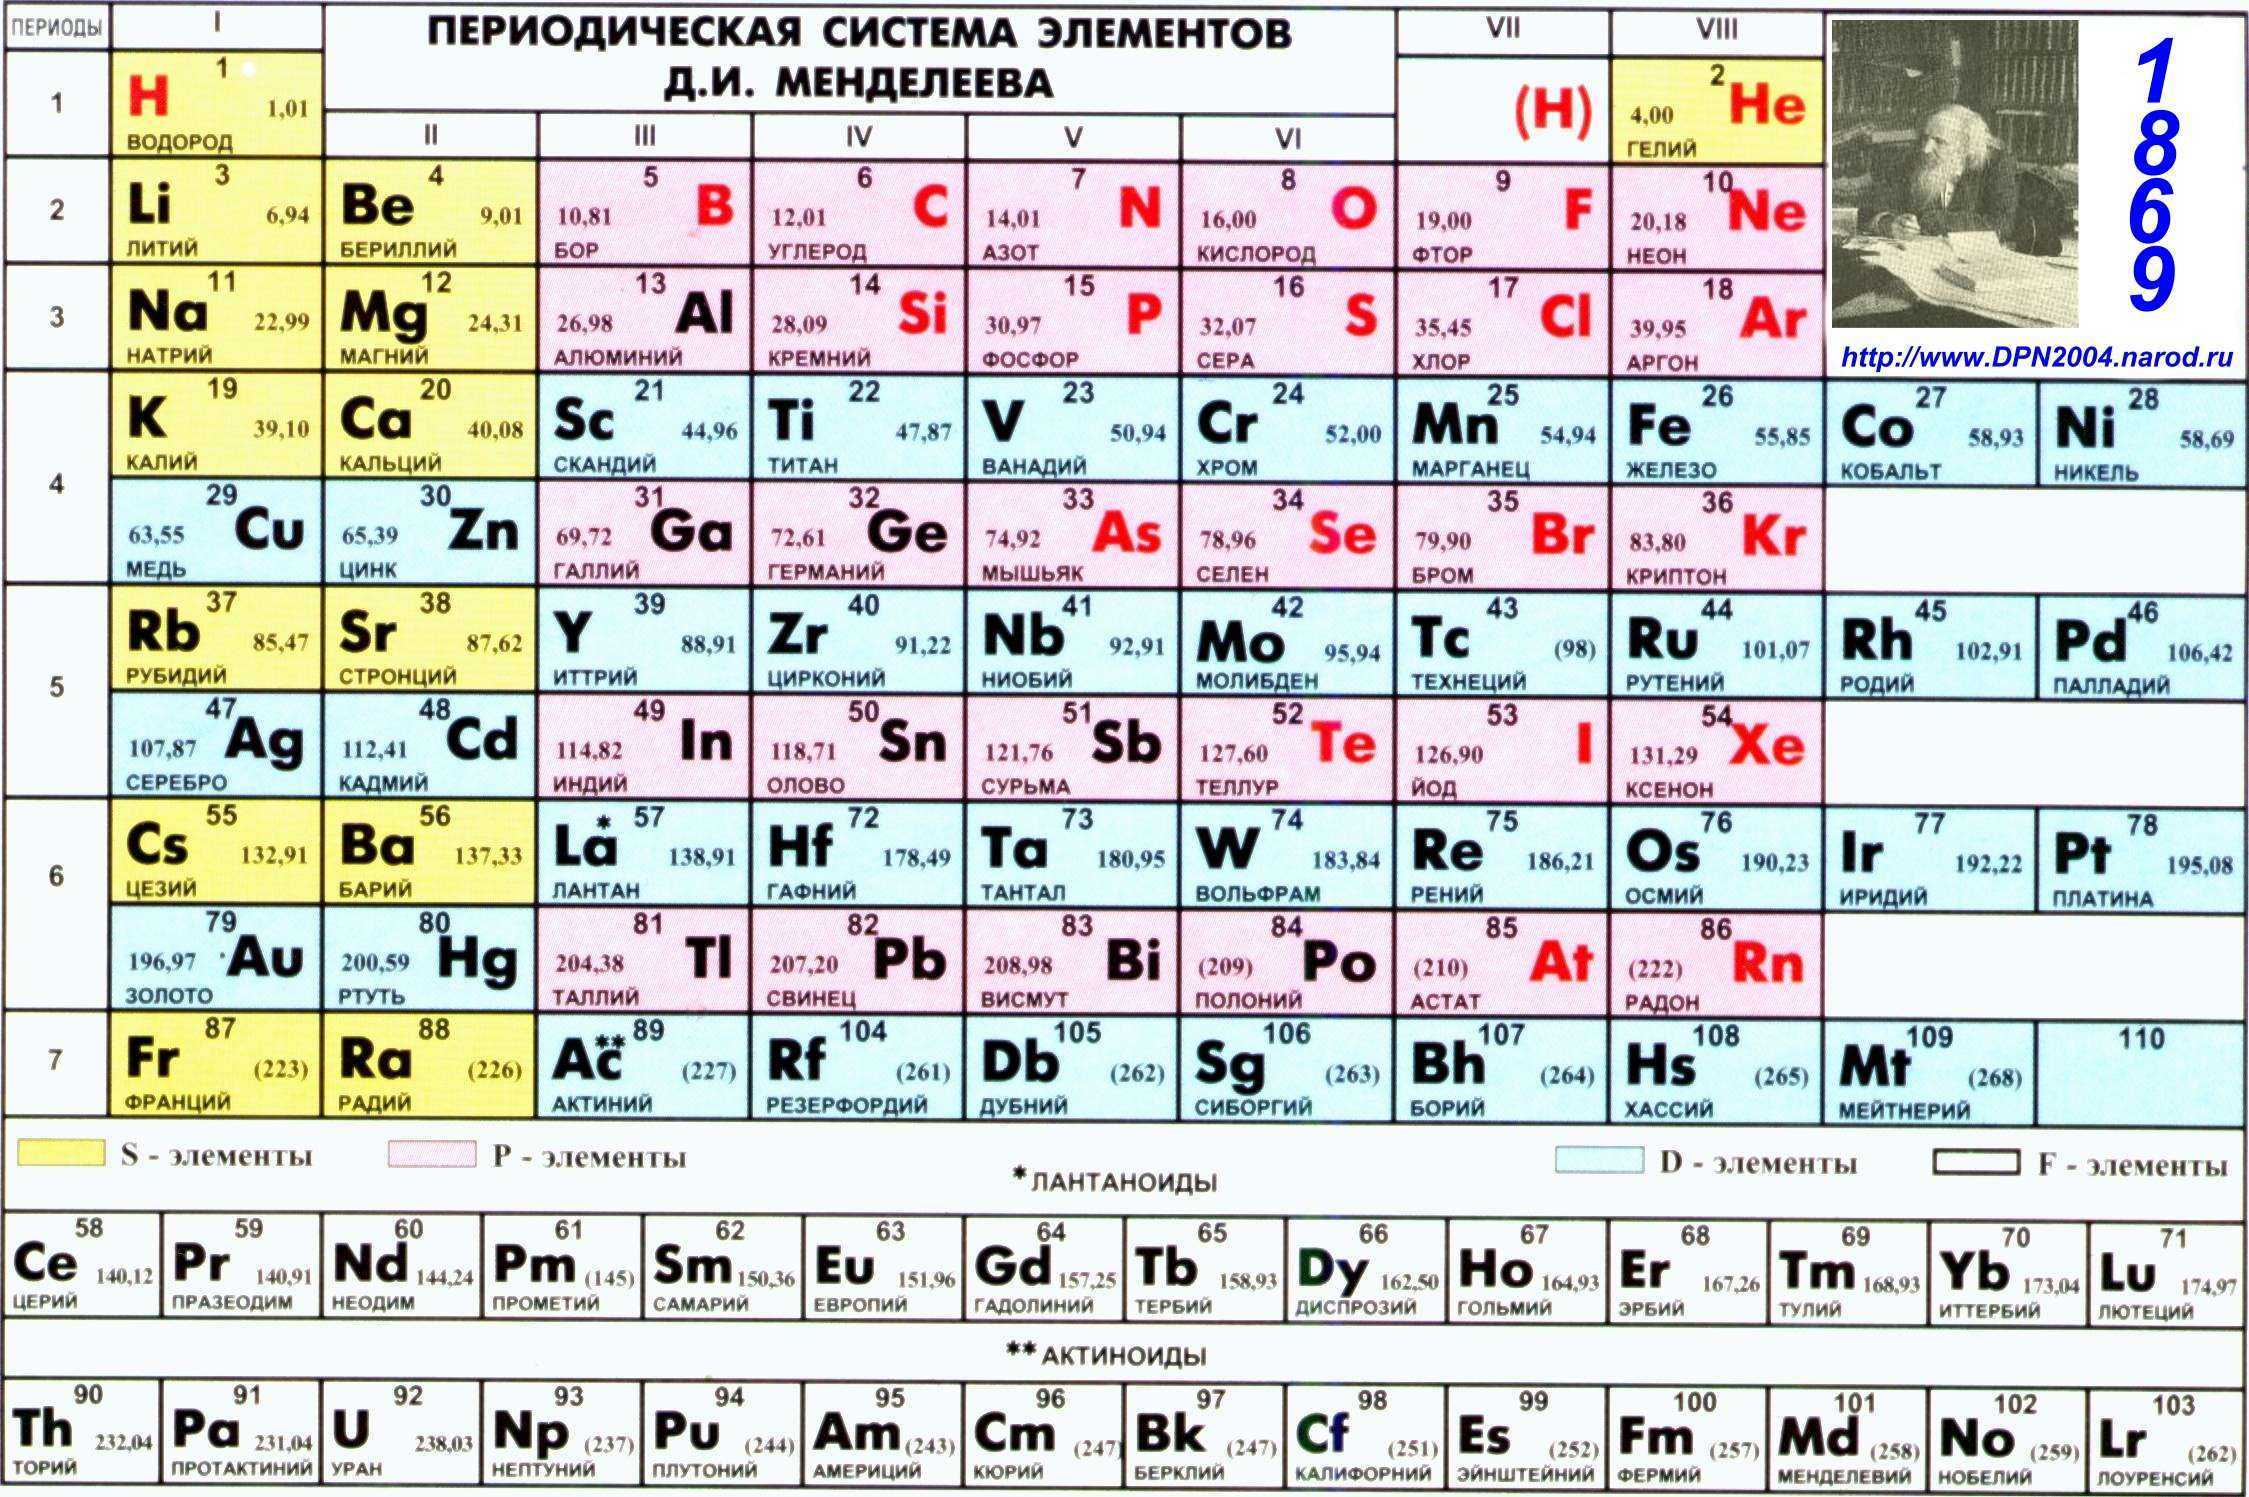 Элемент 1 01. Периодическая таблица Менделеева. Показать периодическую таблицу Менделеева. Первые 20 элементов таблицы Менделеева.